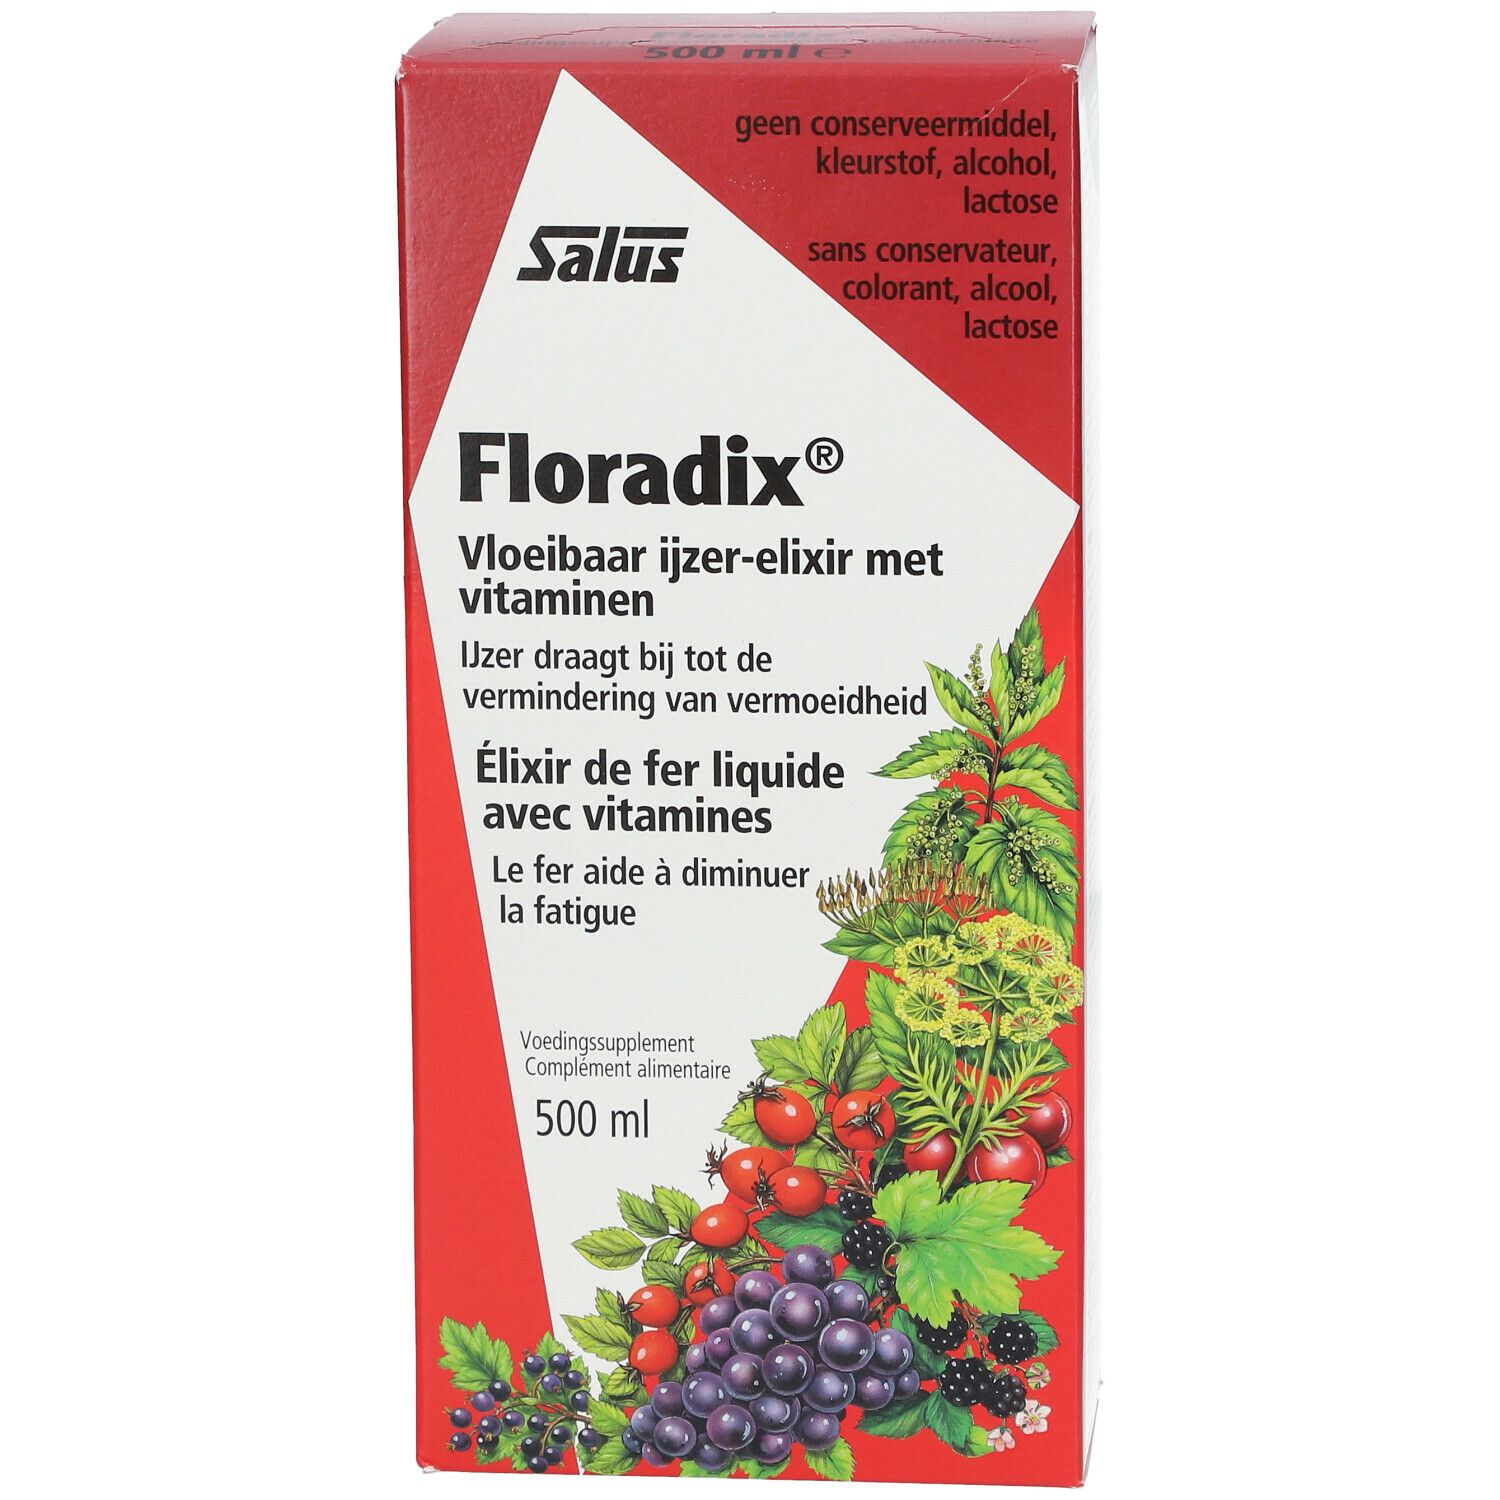 Floradix Elixir